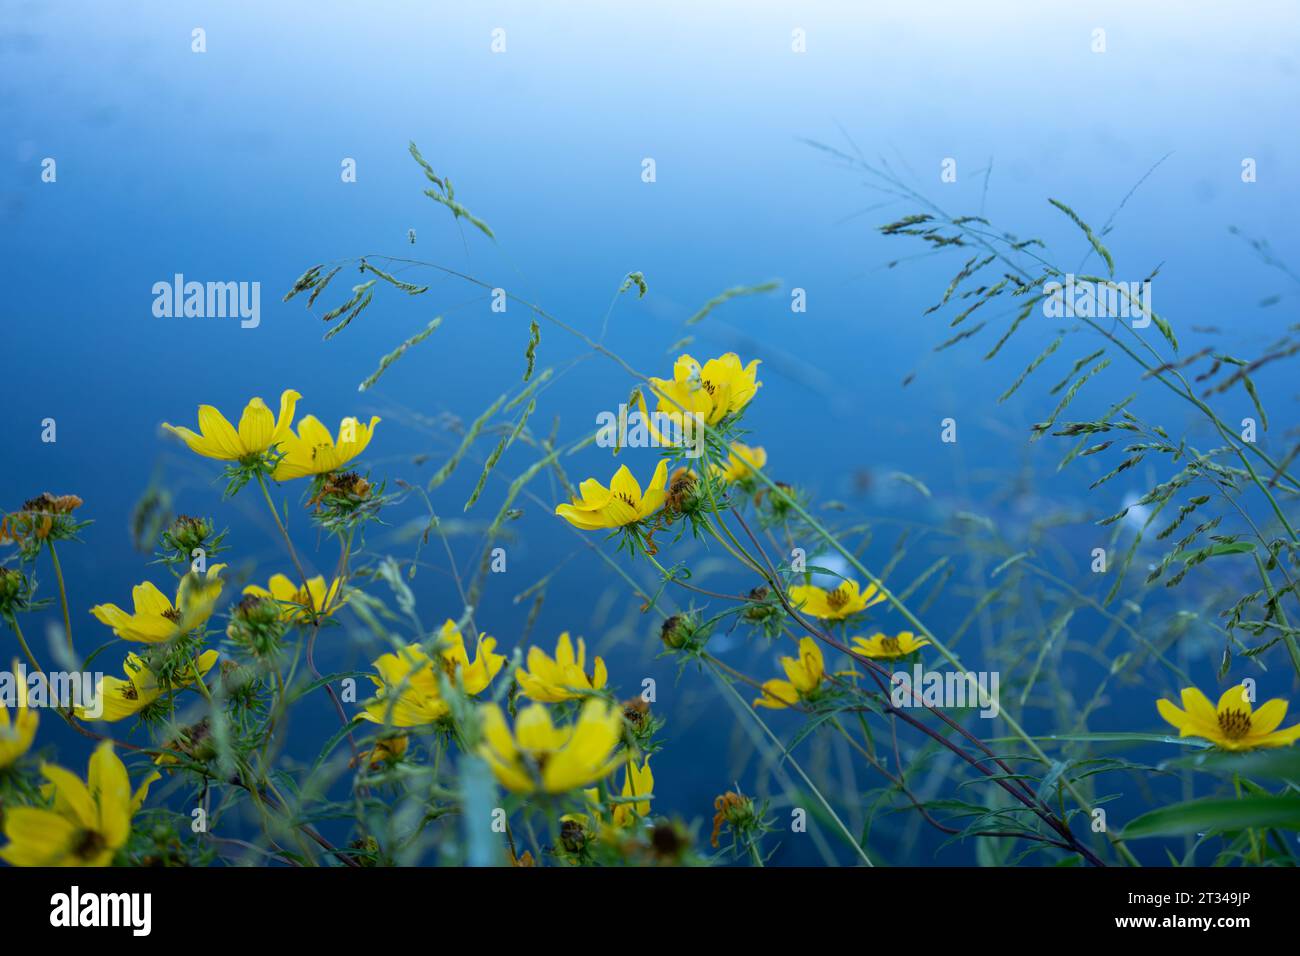 Fiori gialli vivaci in un sereno laghetto con acqua blu Foto Stock